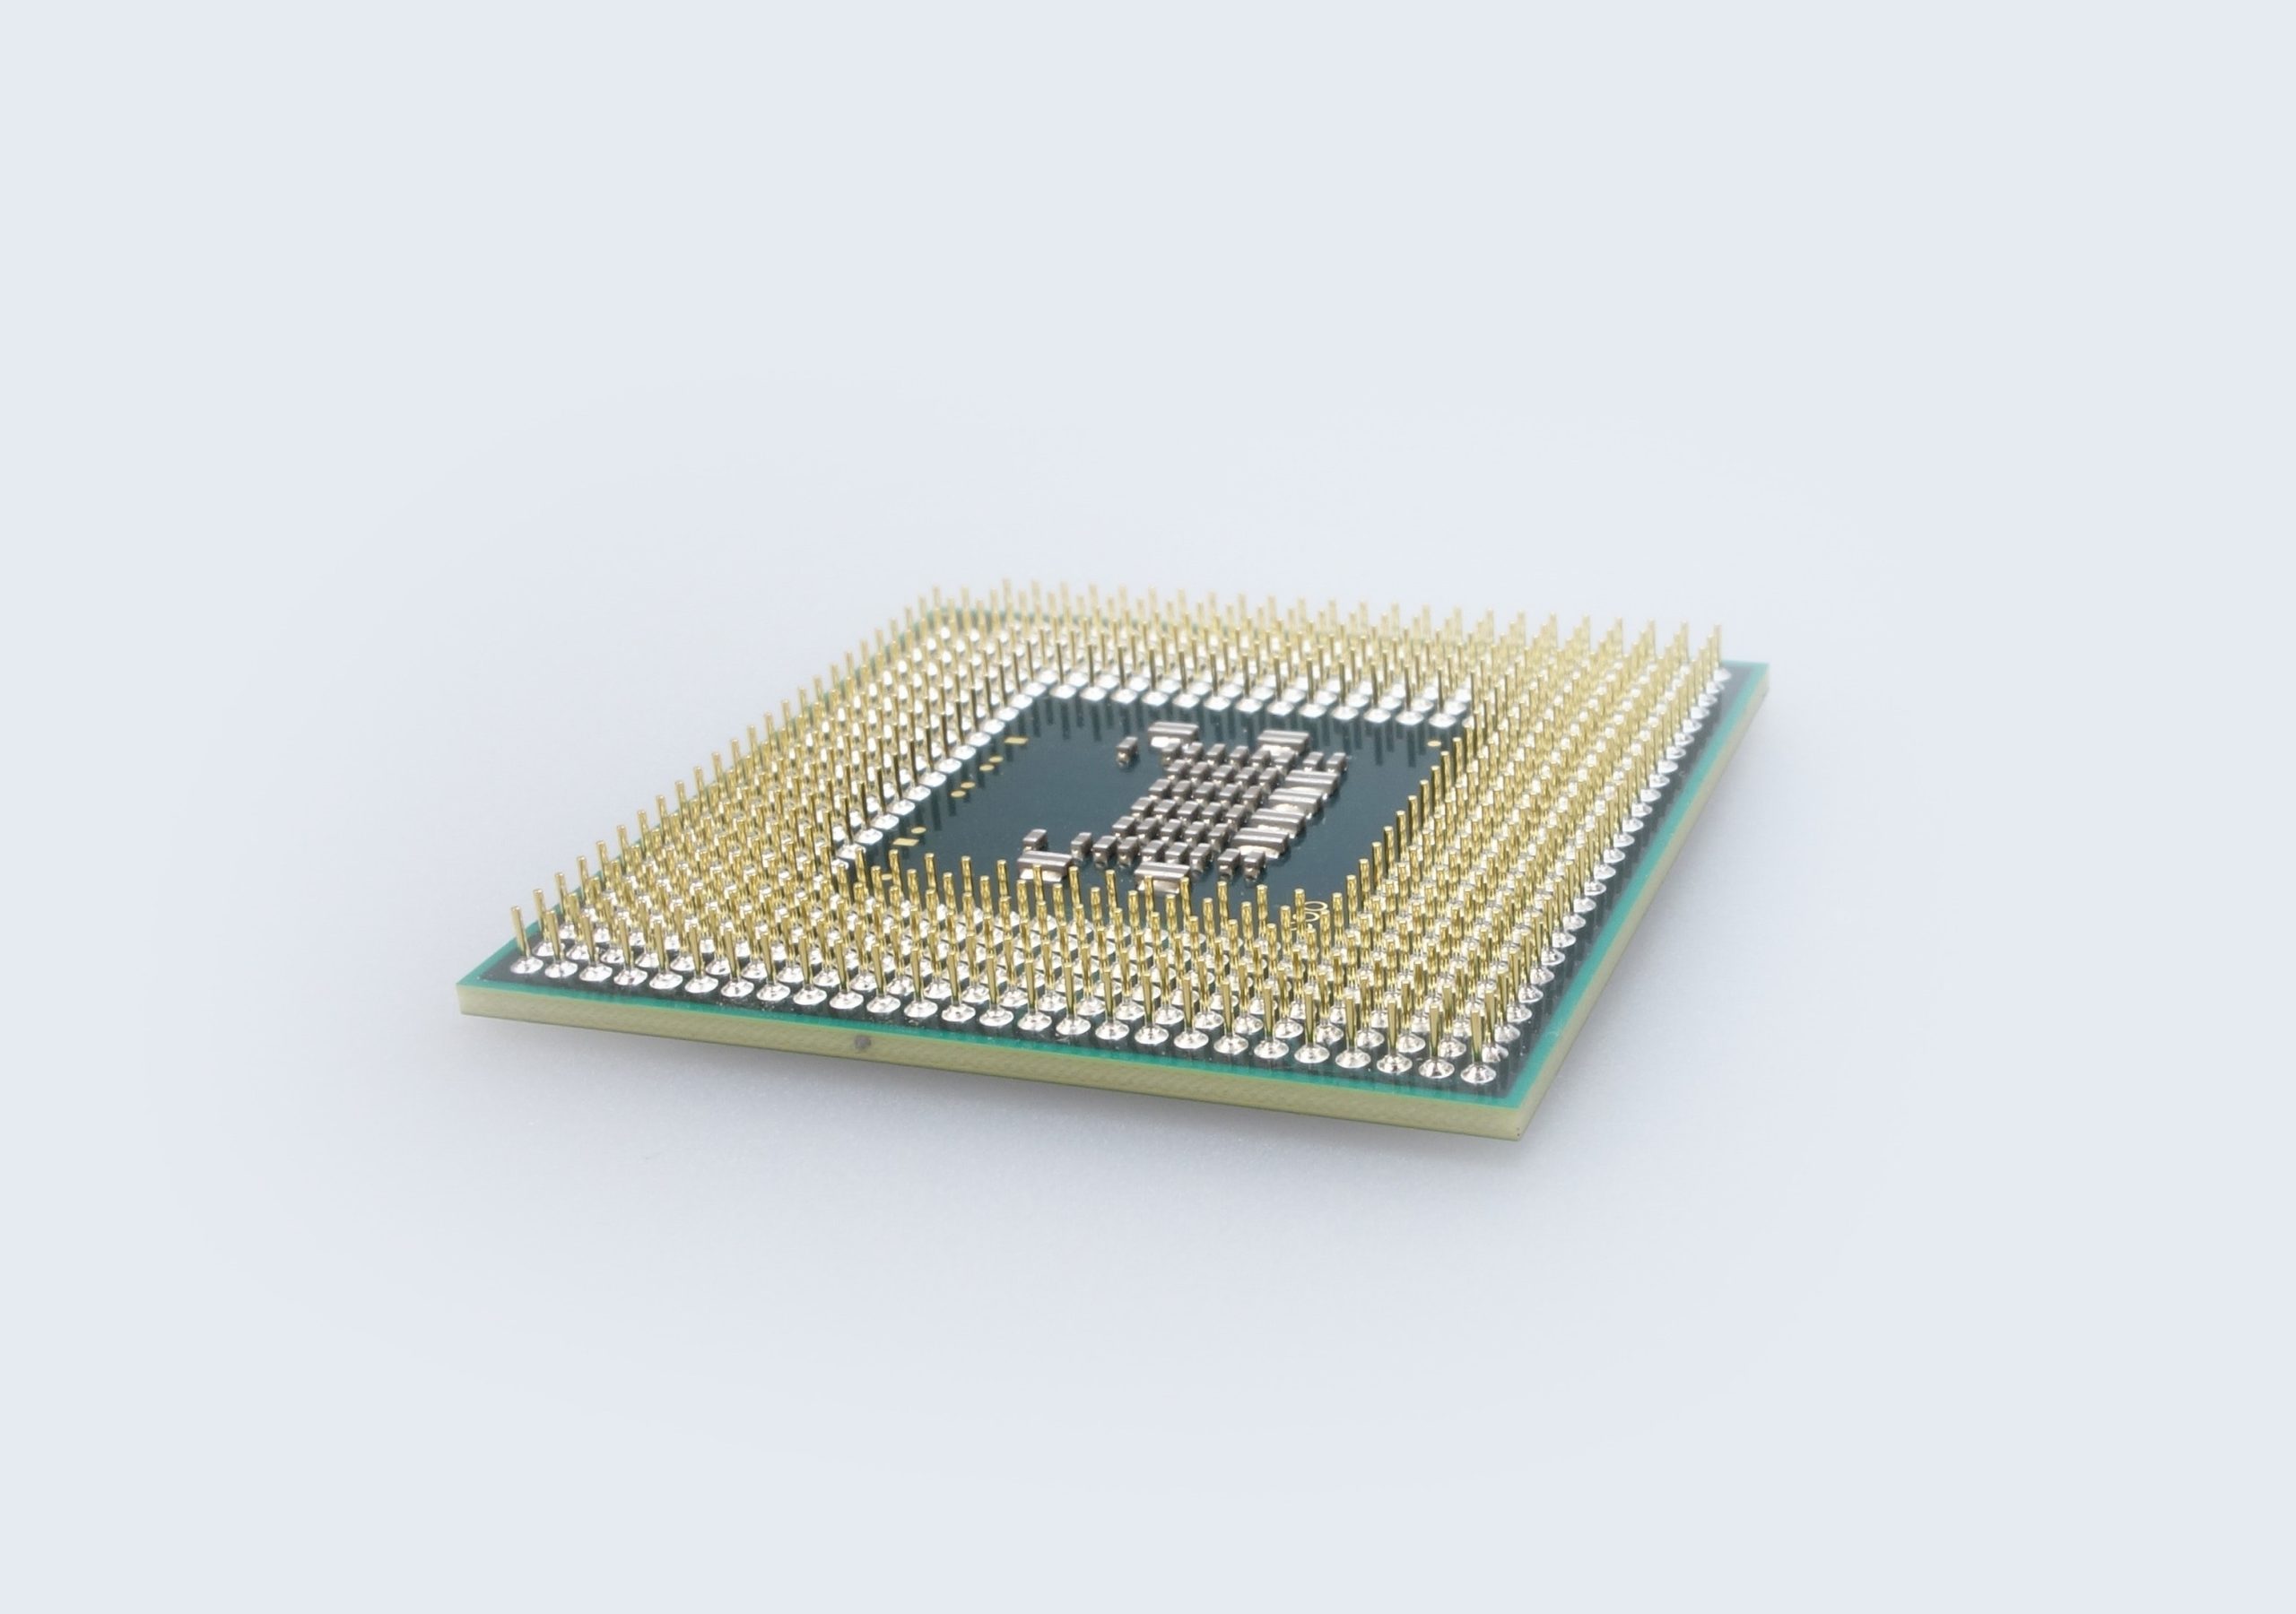 کدام پردازنده بهتر است؟ اگزینوس یا اسنپدراگون